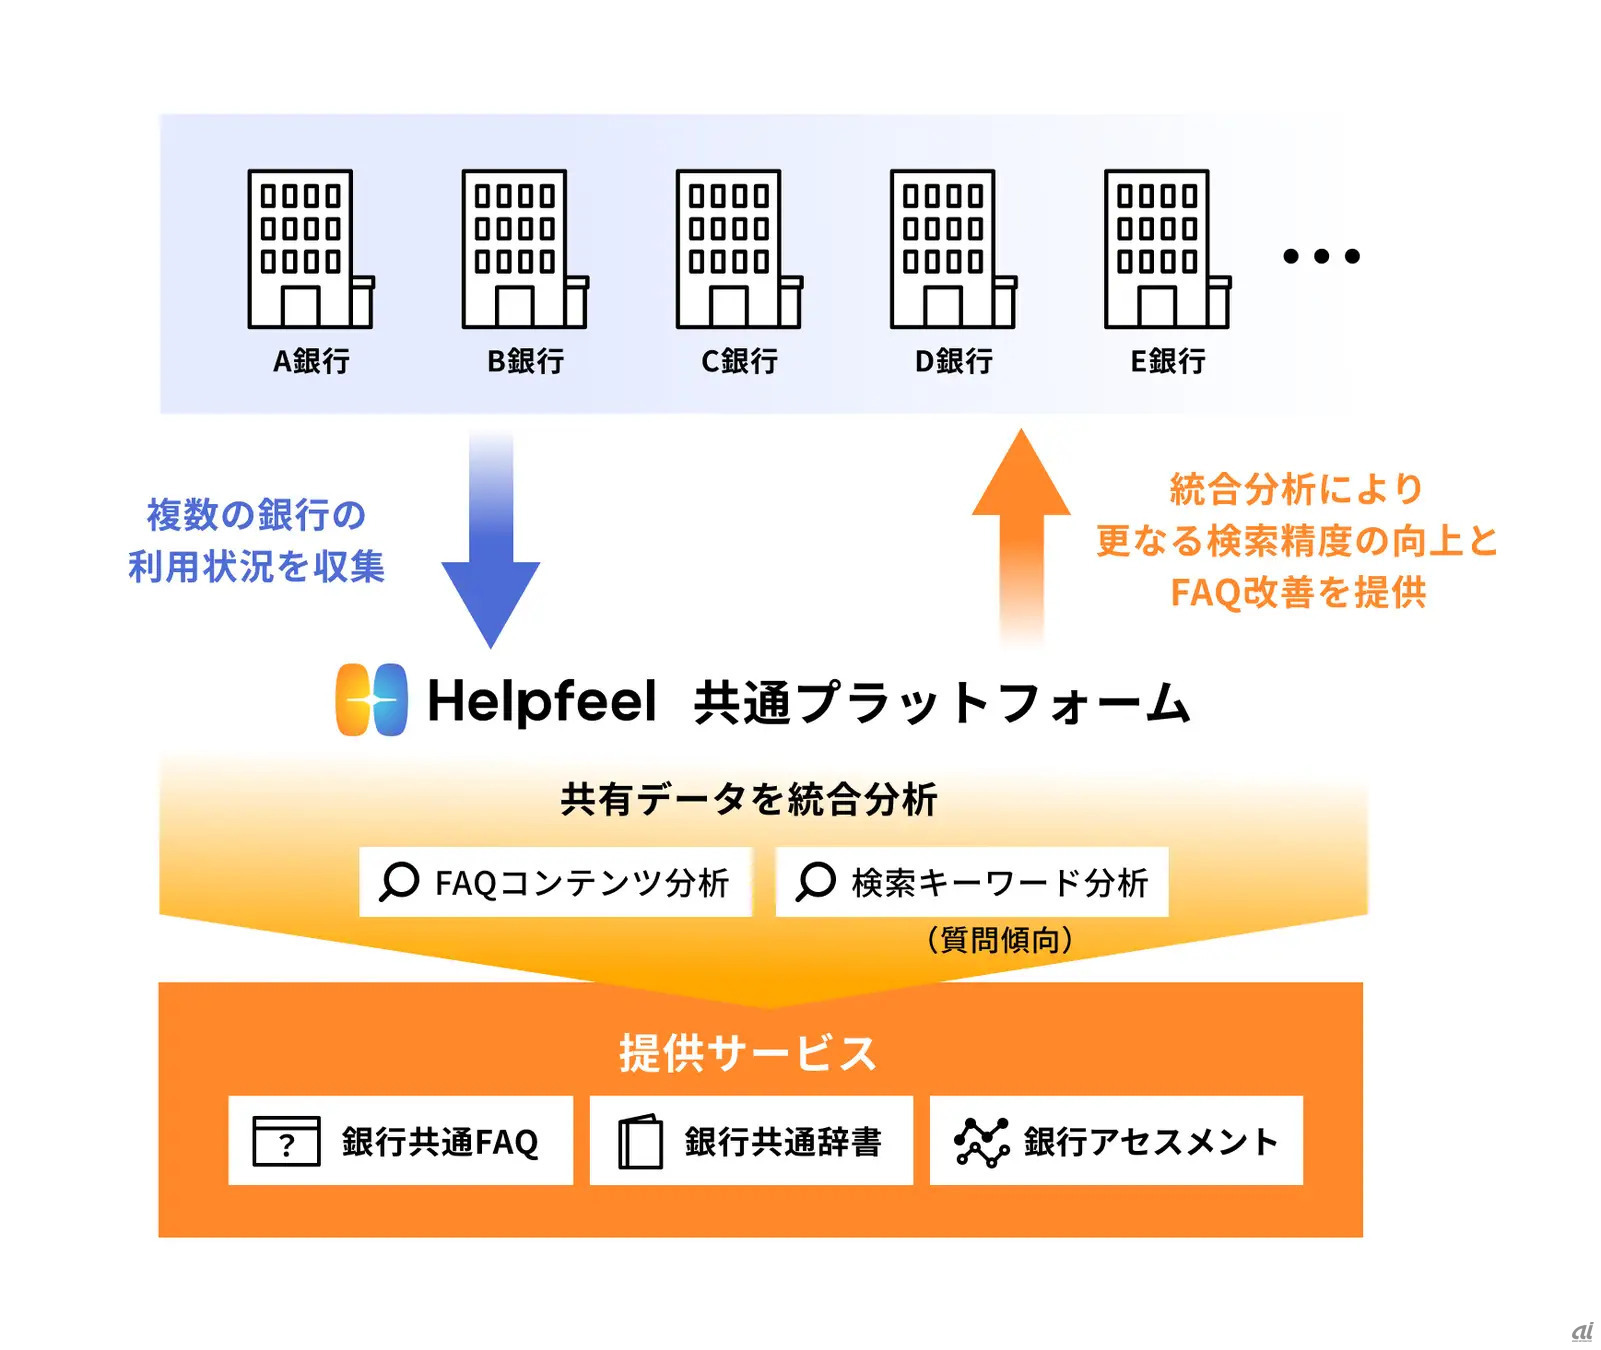 地方銀行向けHelpfeel共通プラットフォームの概要